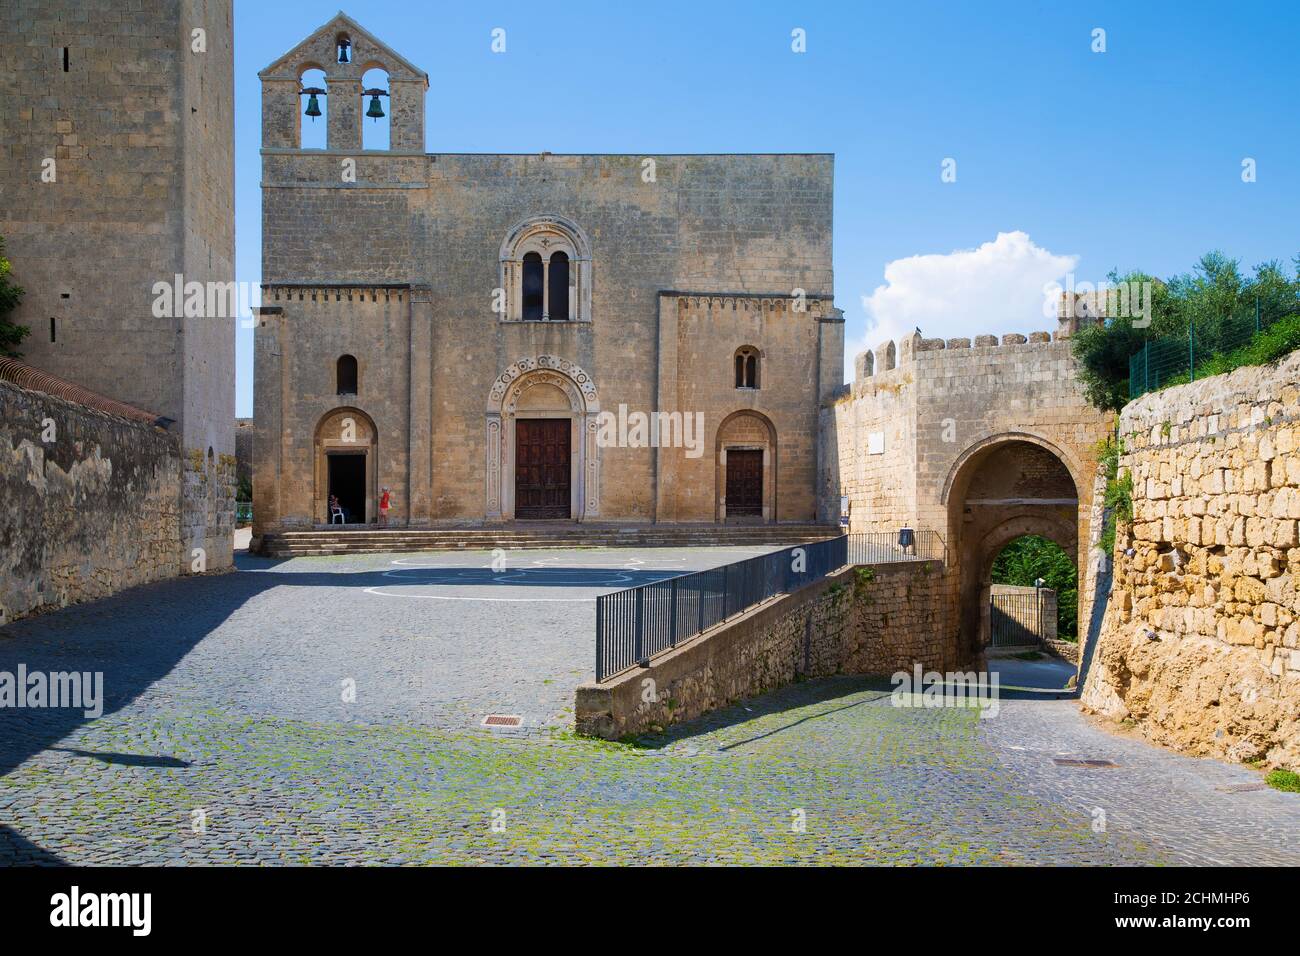 Church of Santa Maria di Castello in Tarquinia, Italy Stock Photo